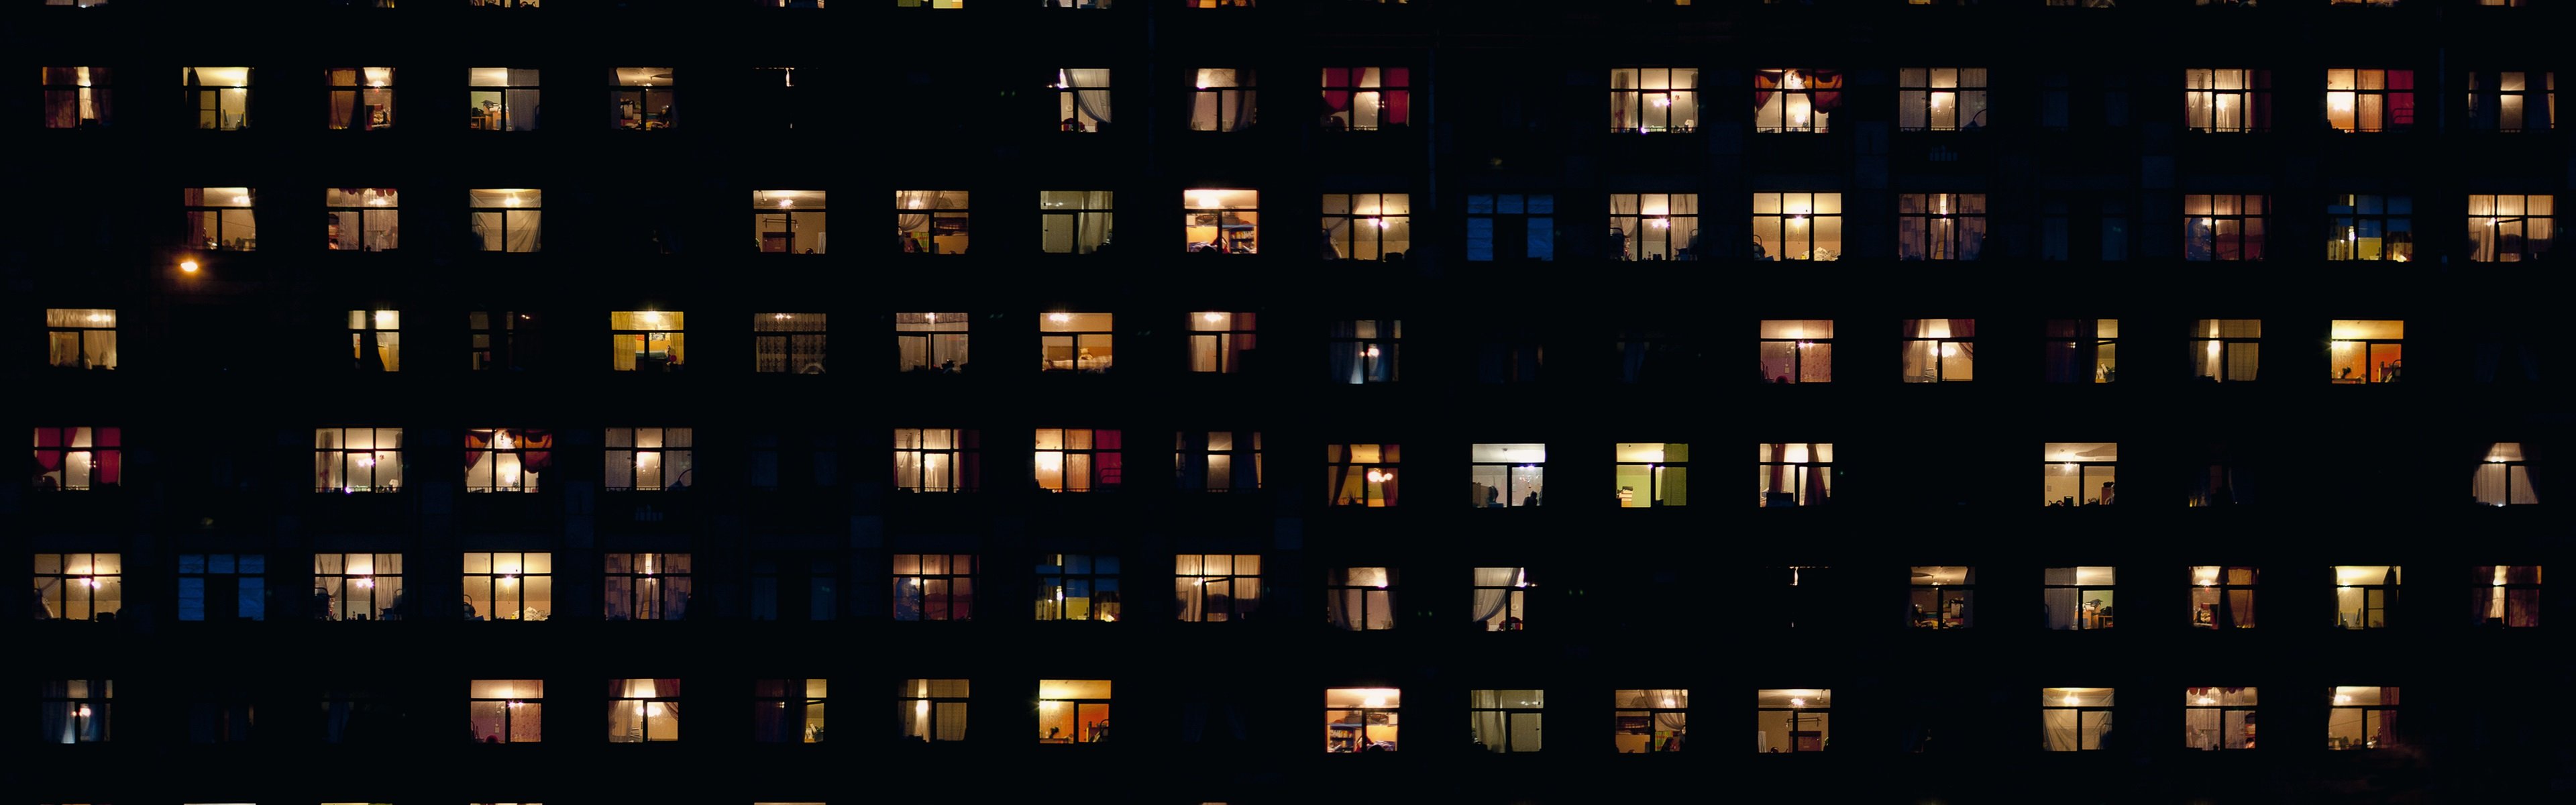 В окнах свет и нет войны. Вечерние окна домов. Ночные окна домов. Многоэтажный дом ночью. Свет в окнах домов.